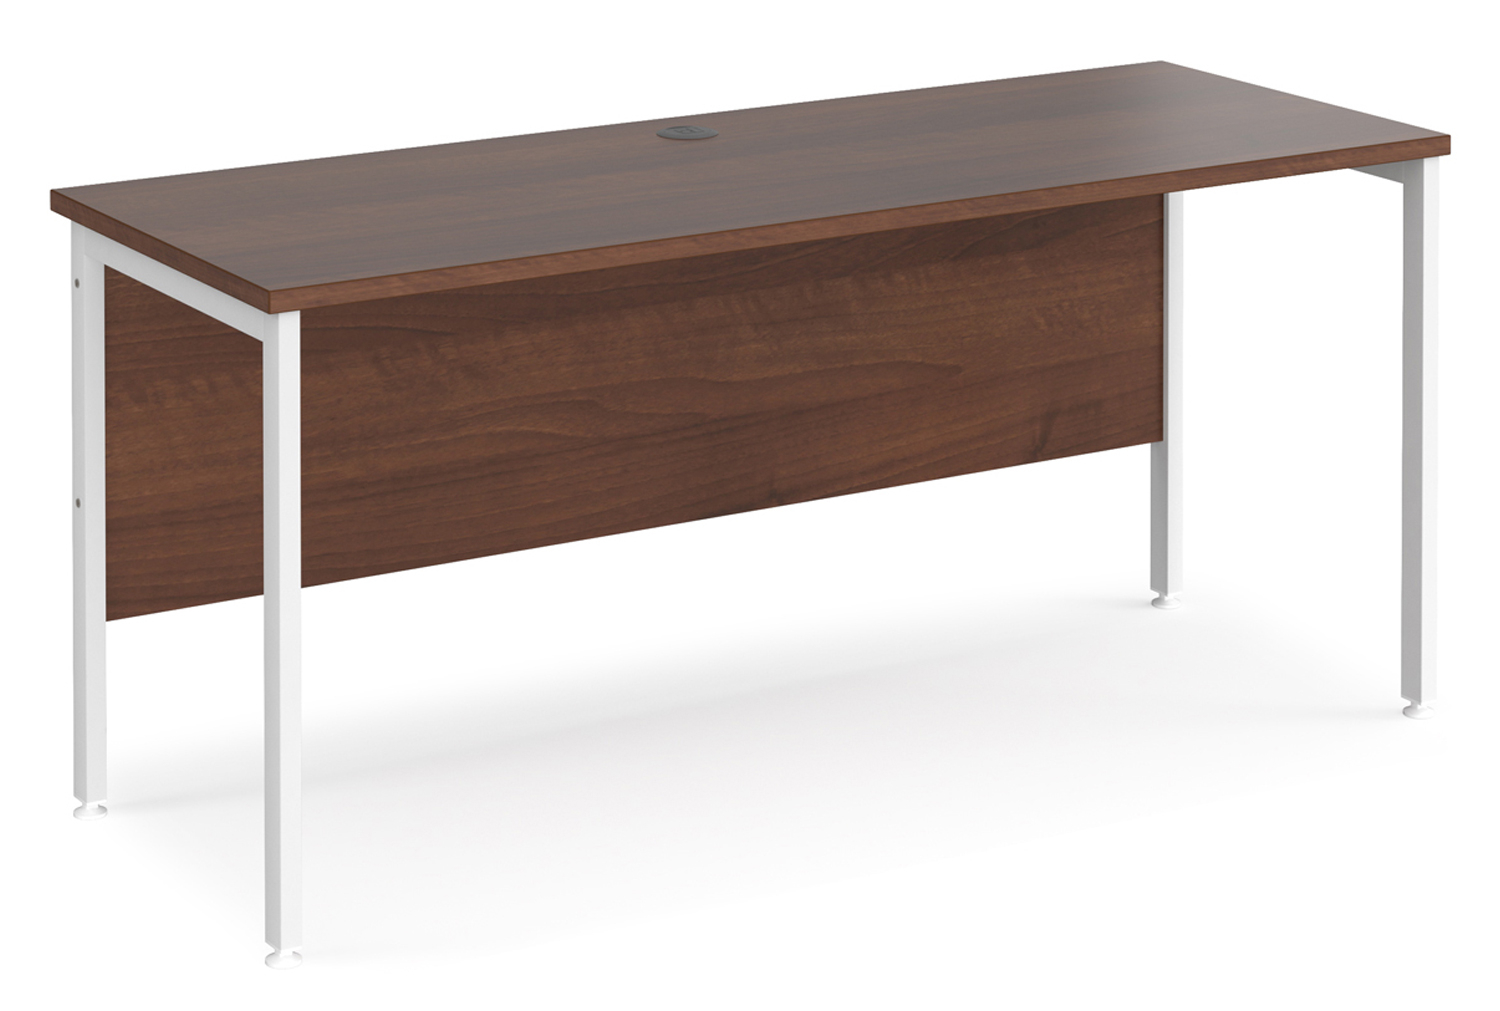 Value Line Deluxe H-Leg Narrow Rectangular Office Desk (White Legs), 160wx60dx73h (cm), Walnut